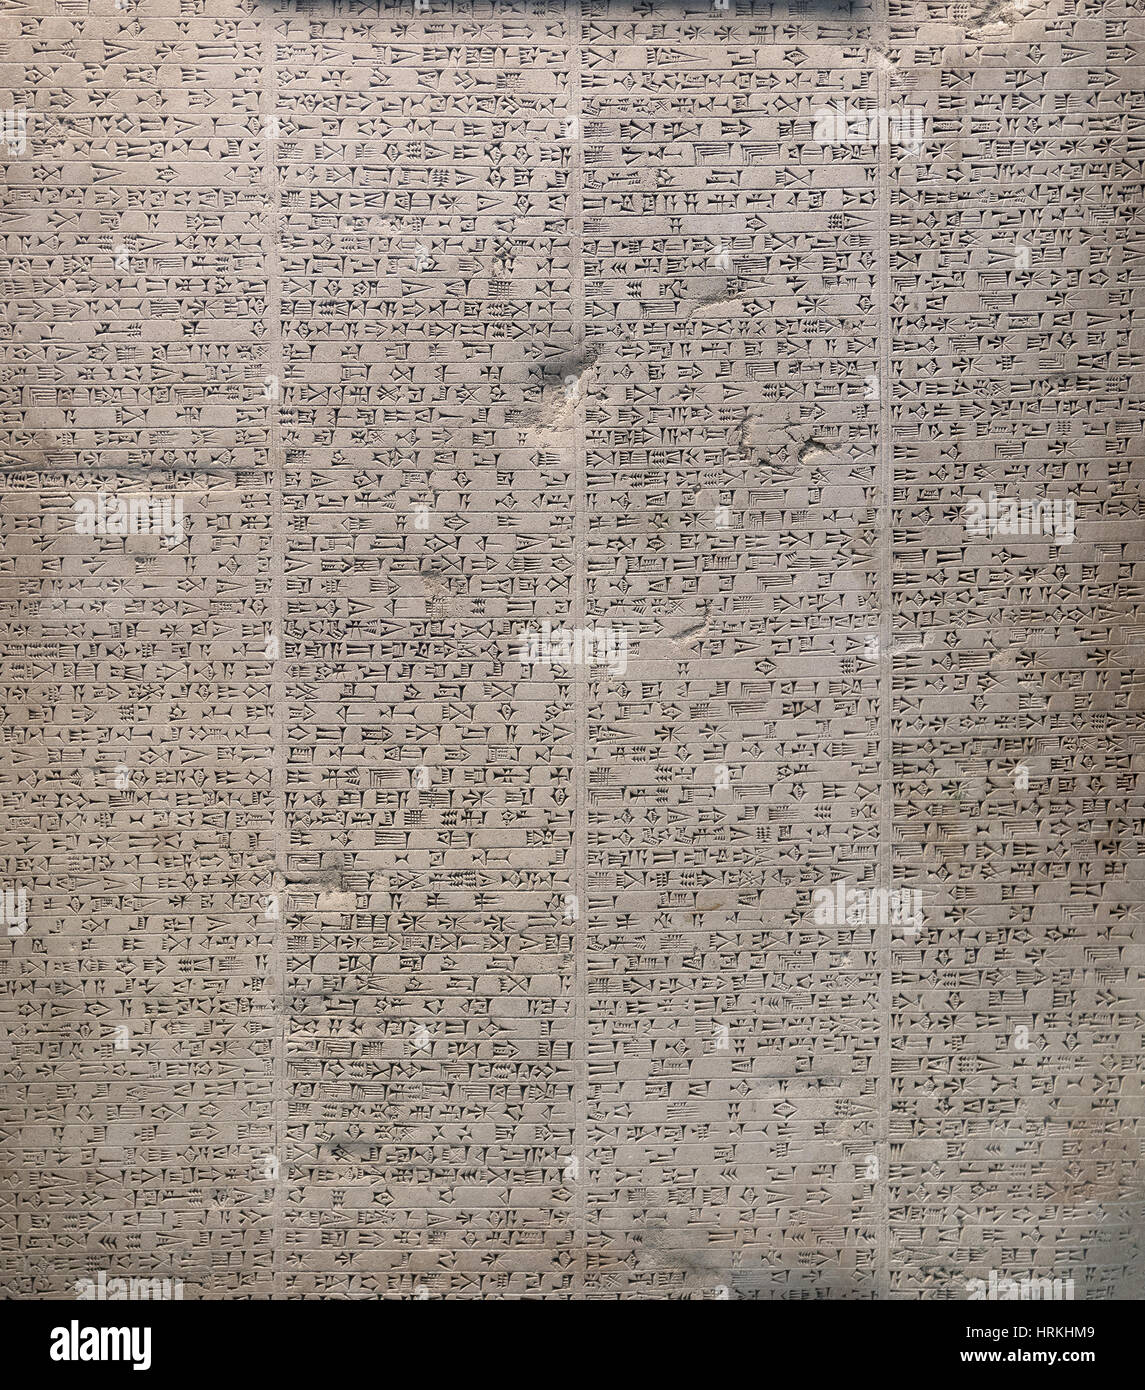 Gefüllten Rahmen Bild von der einen gravierten Stein gefunden in den Ruinen des alten Babylon, Beschreibung der religiösen Hingabe und bürgerlichen Errungenschaften der Neb Stockfoto